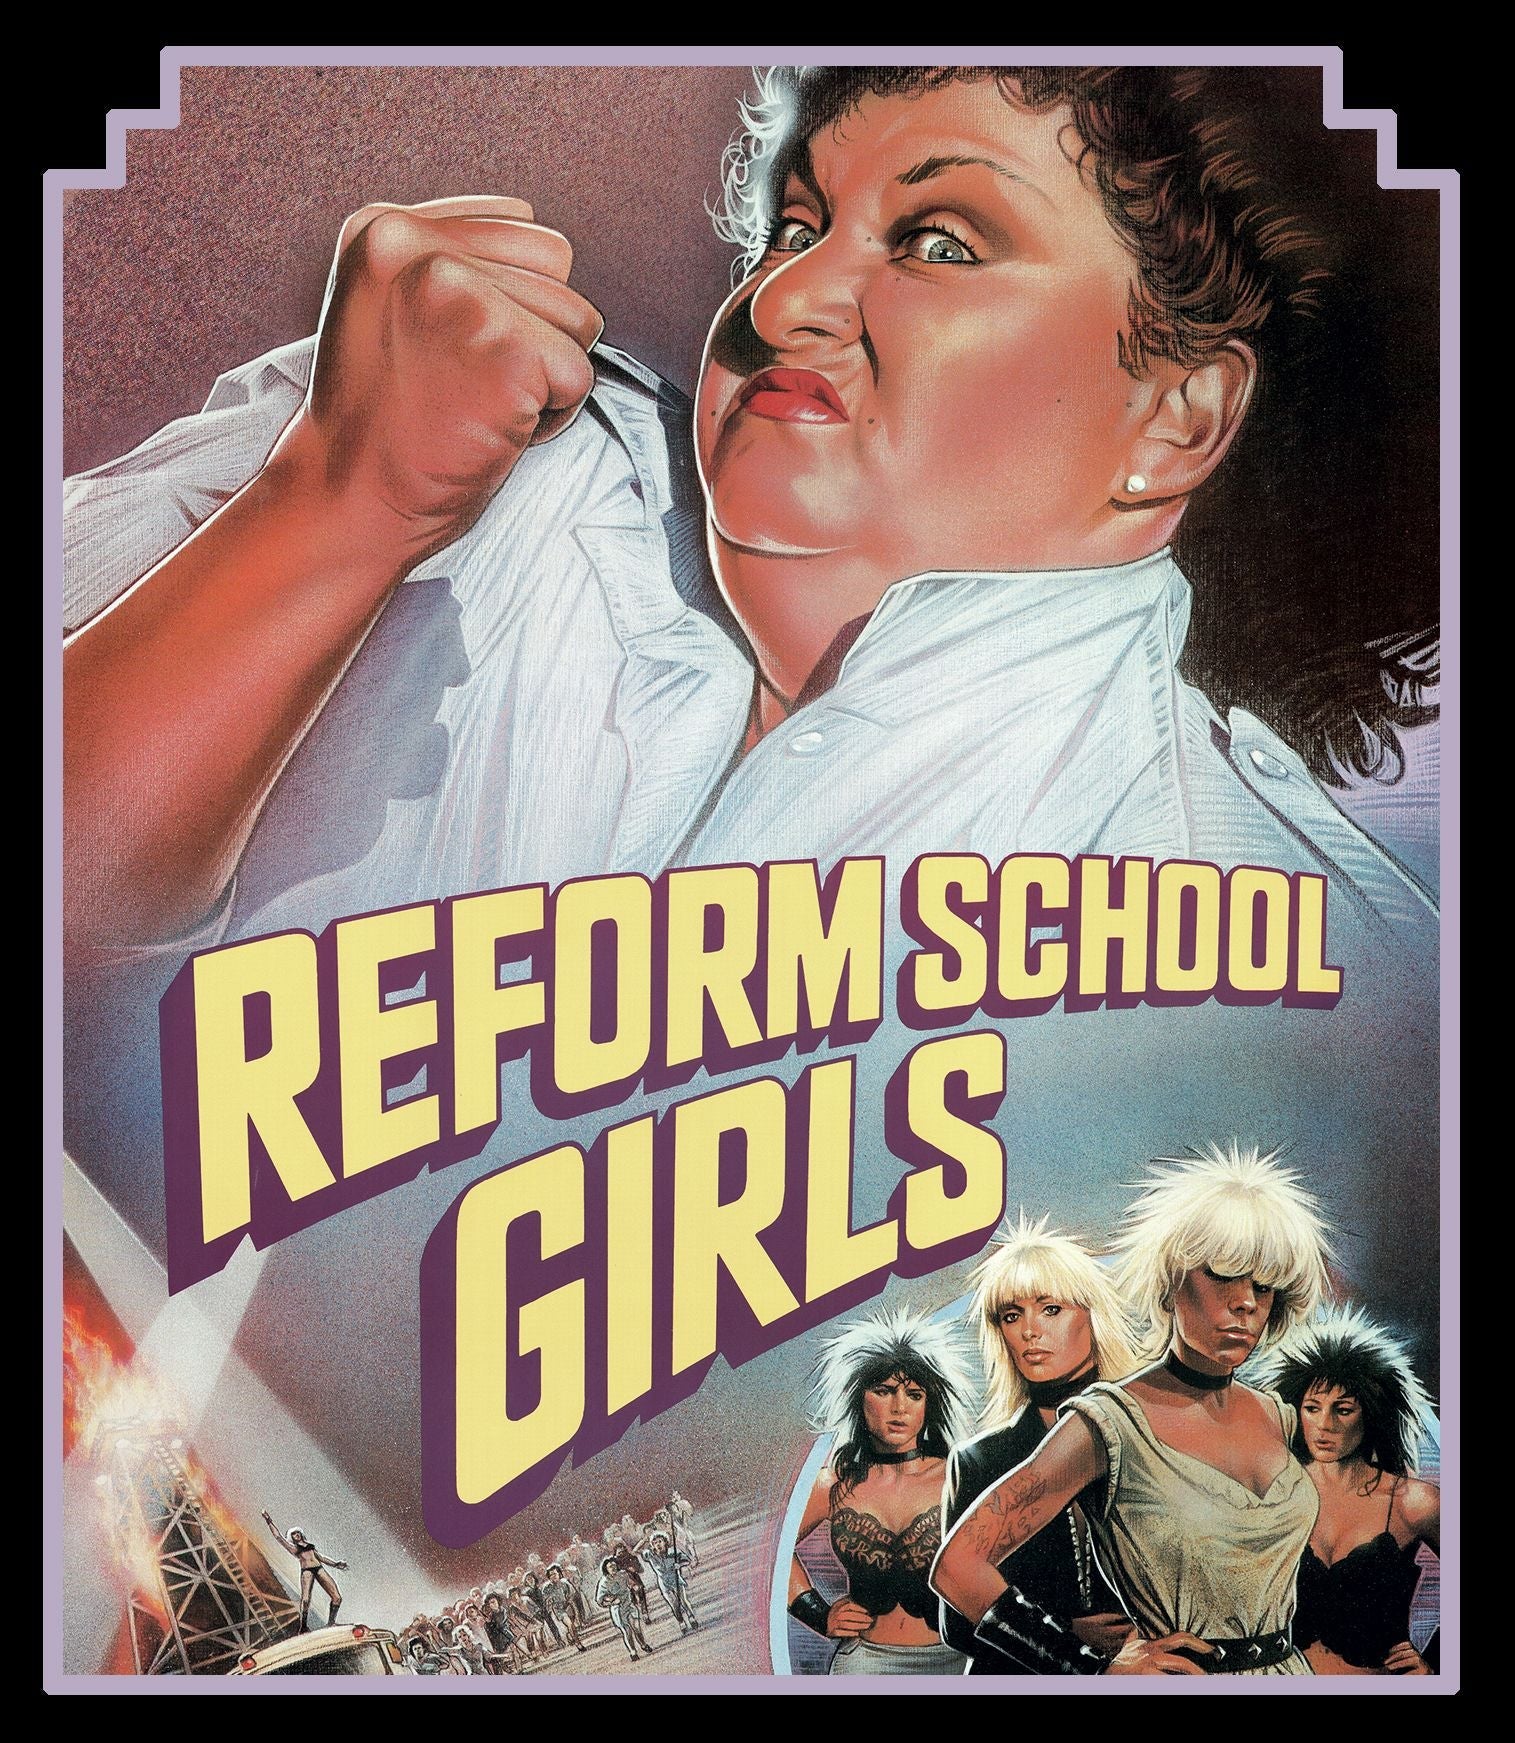 REFORM SCHOOL GIRLS (LIMITED EDITION) BLU-RAY